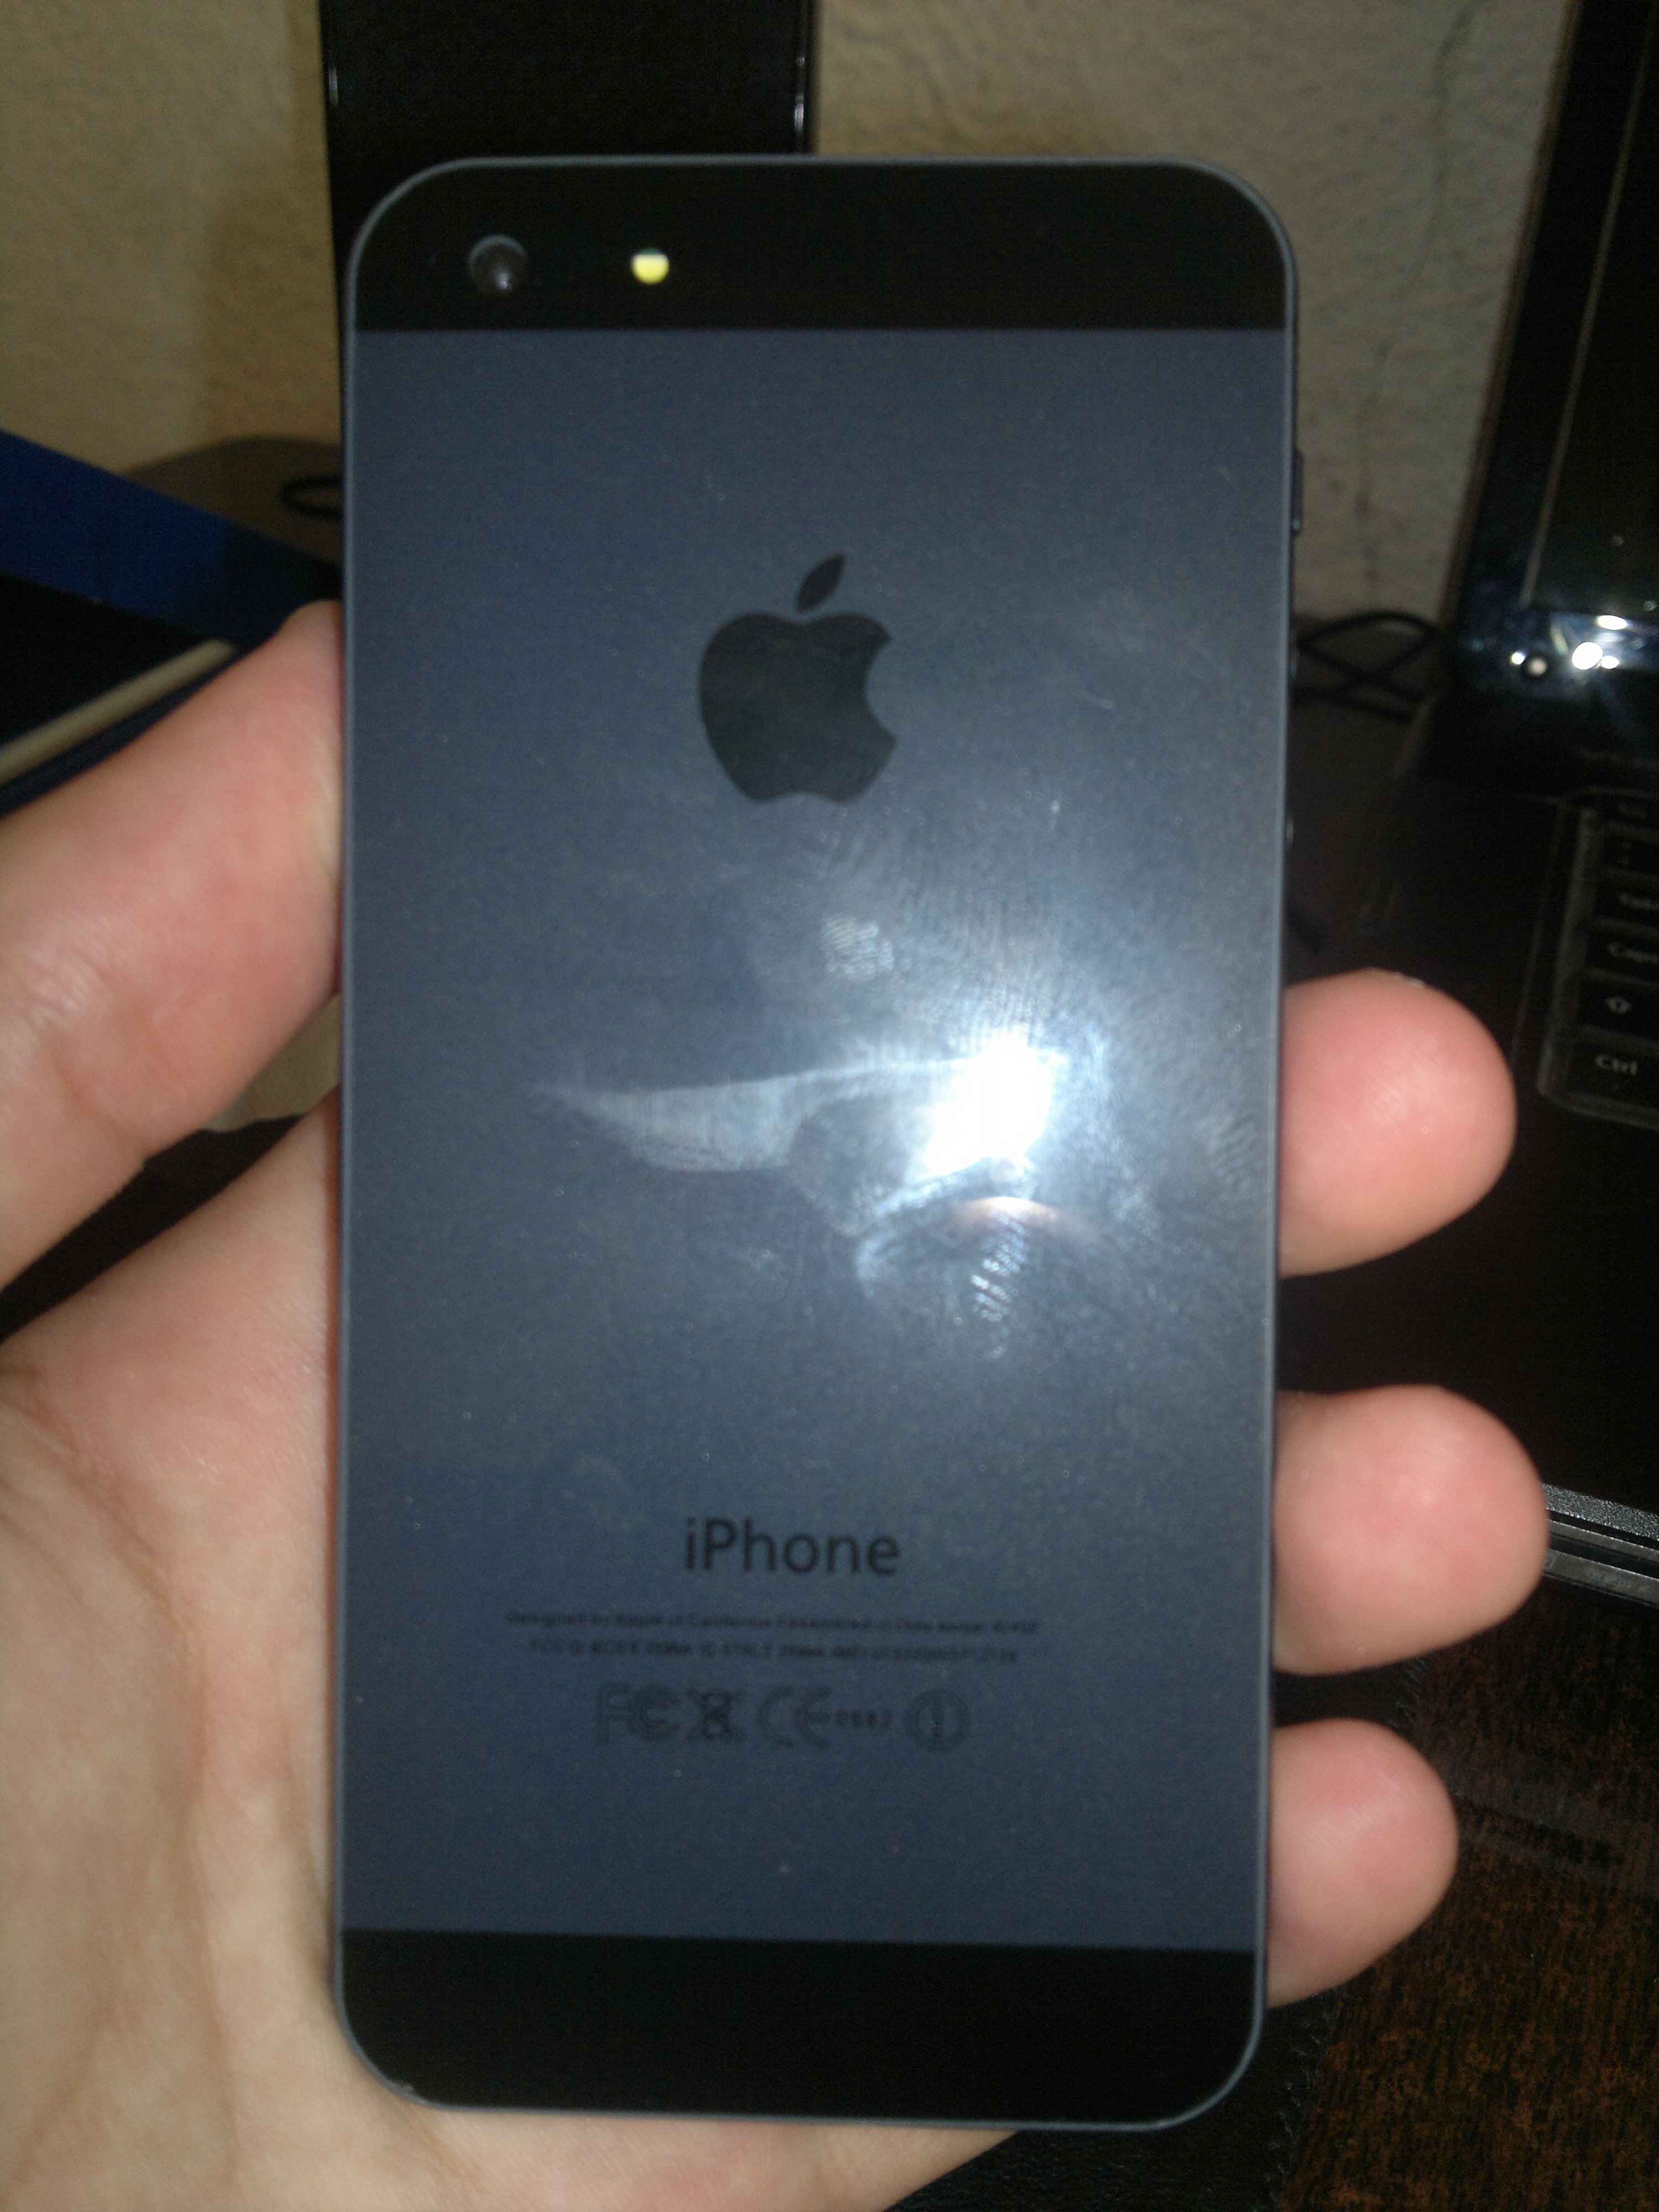  گوشی  Iphone 5 دو هسته ای واقعی و با حافظه داخلی 16 گیگ(فقط رنگ مشکی موجود است)